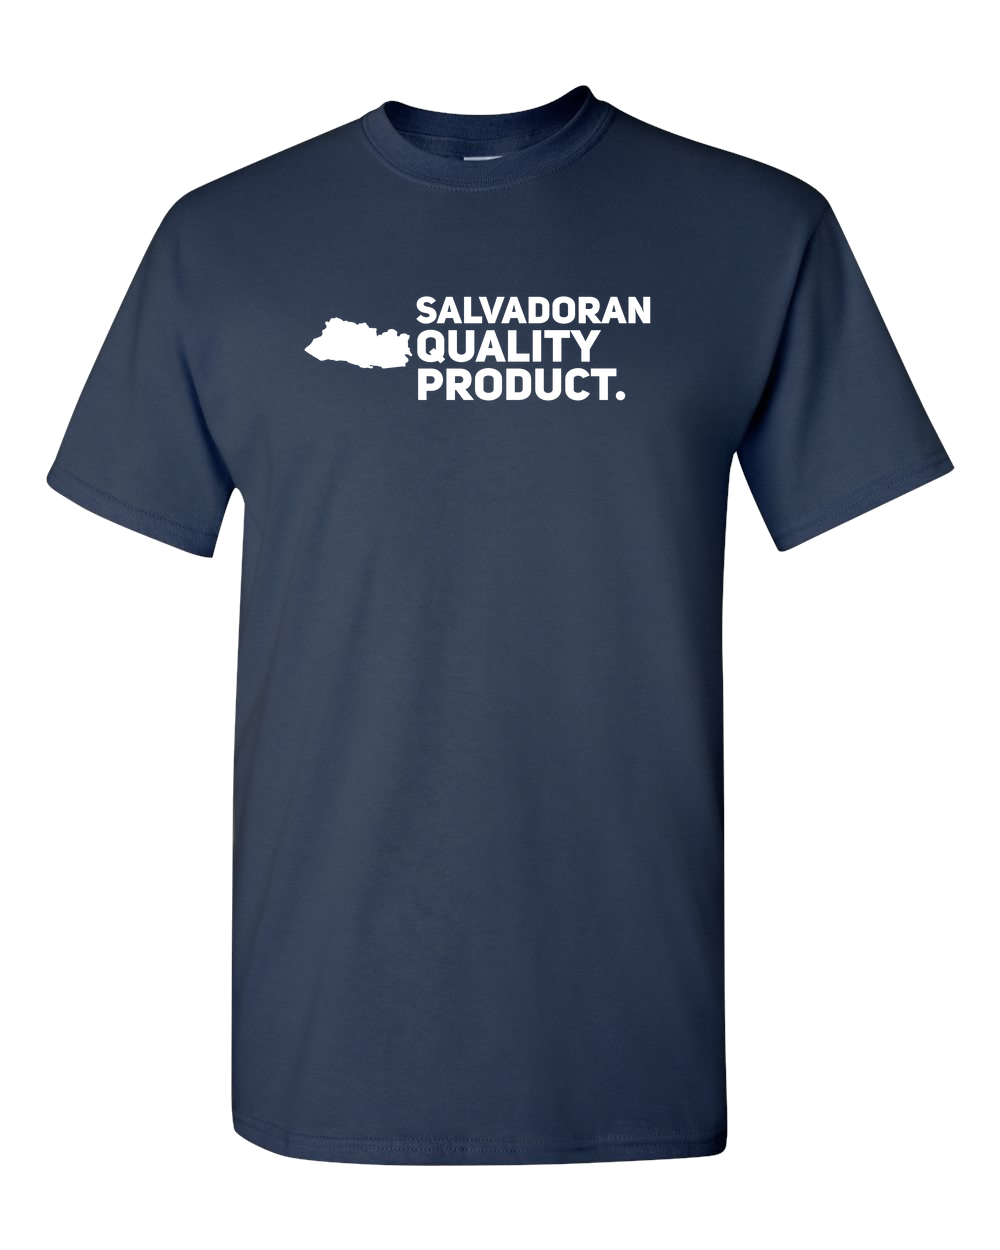 EL SALVADOR Adult Unisex T-Shirt